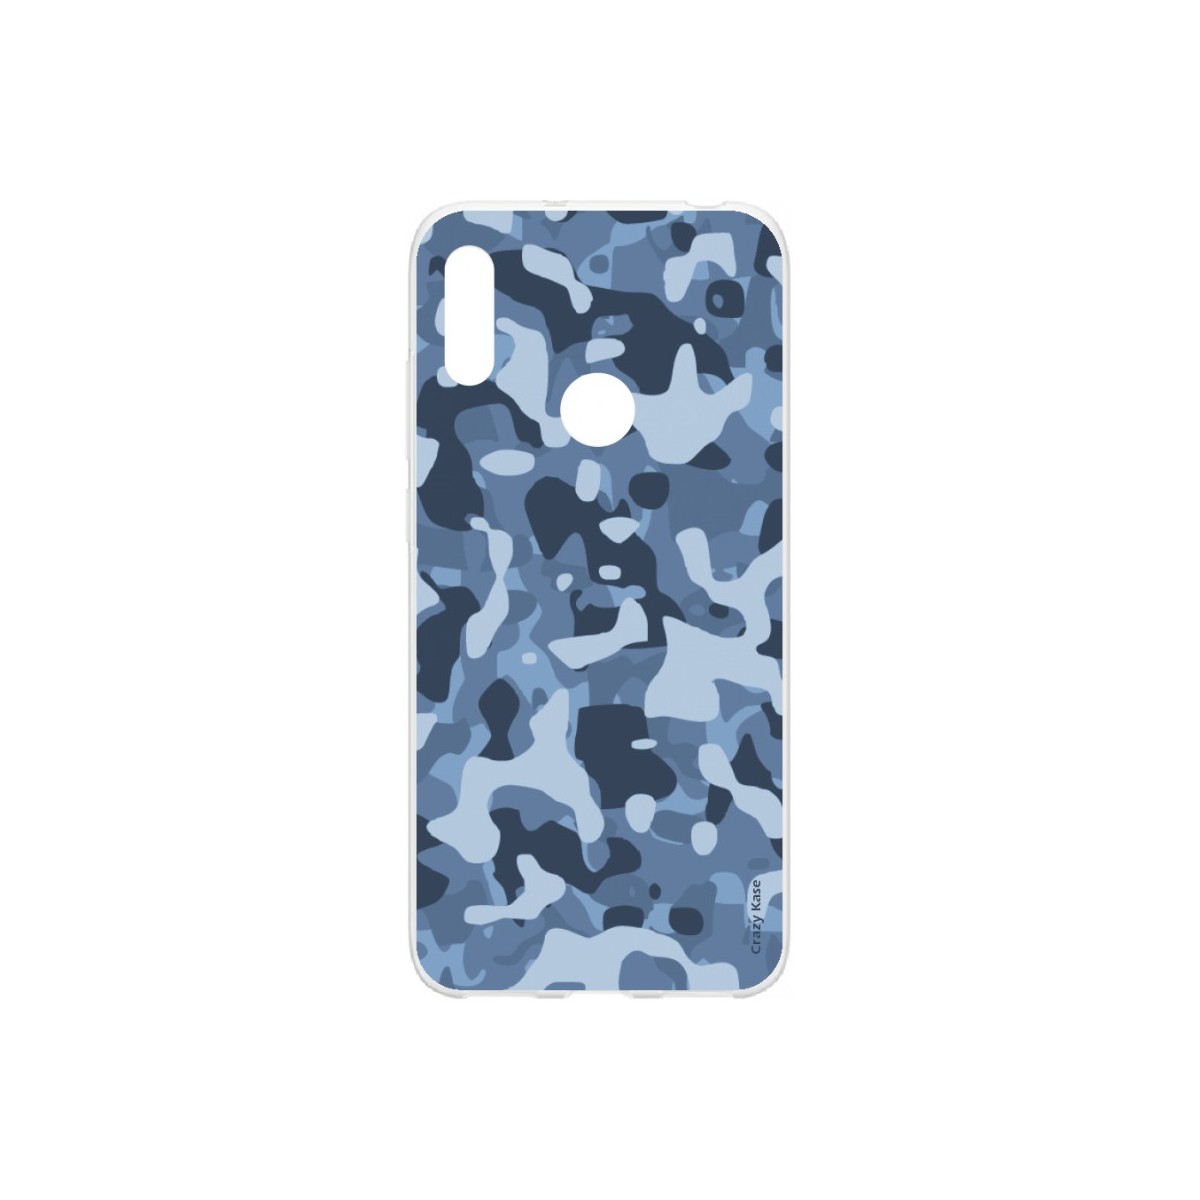 Coque pour Huawei Y6s souple Camouflage militaire bleu Crazy Kase